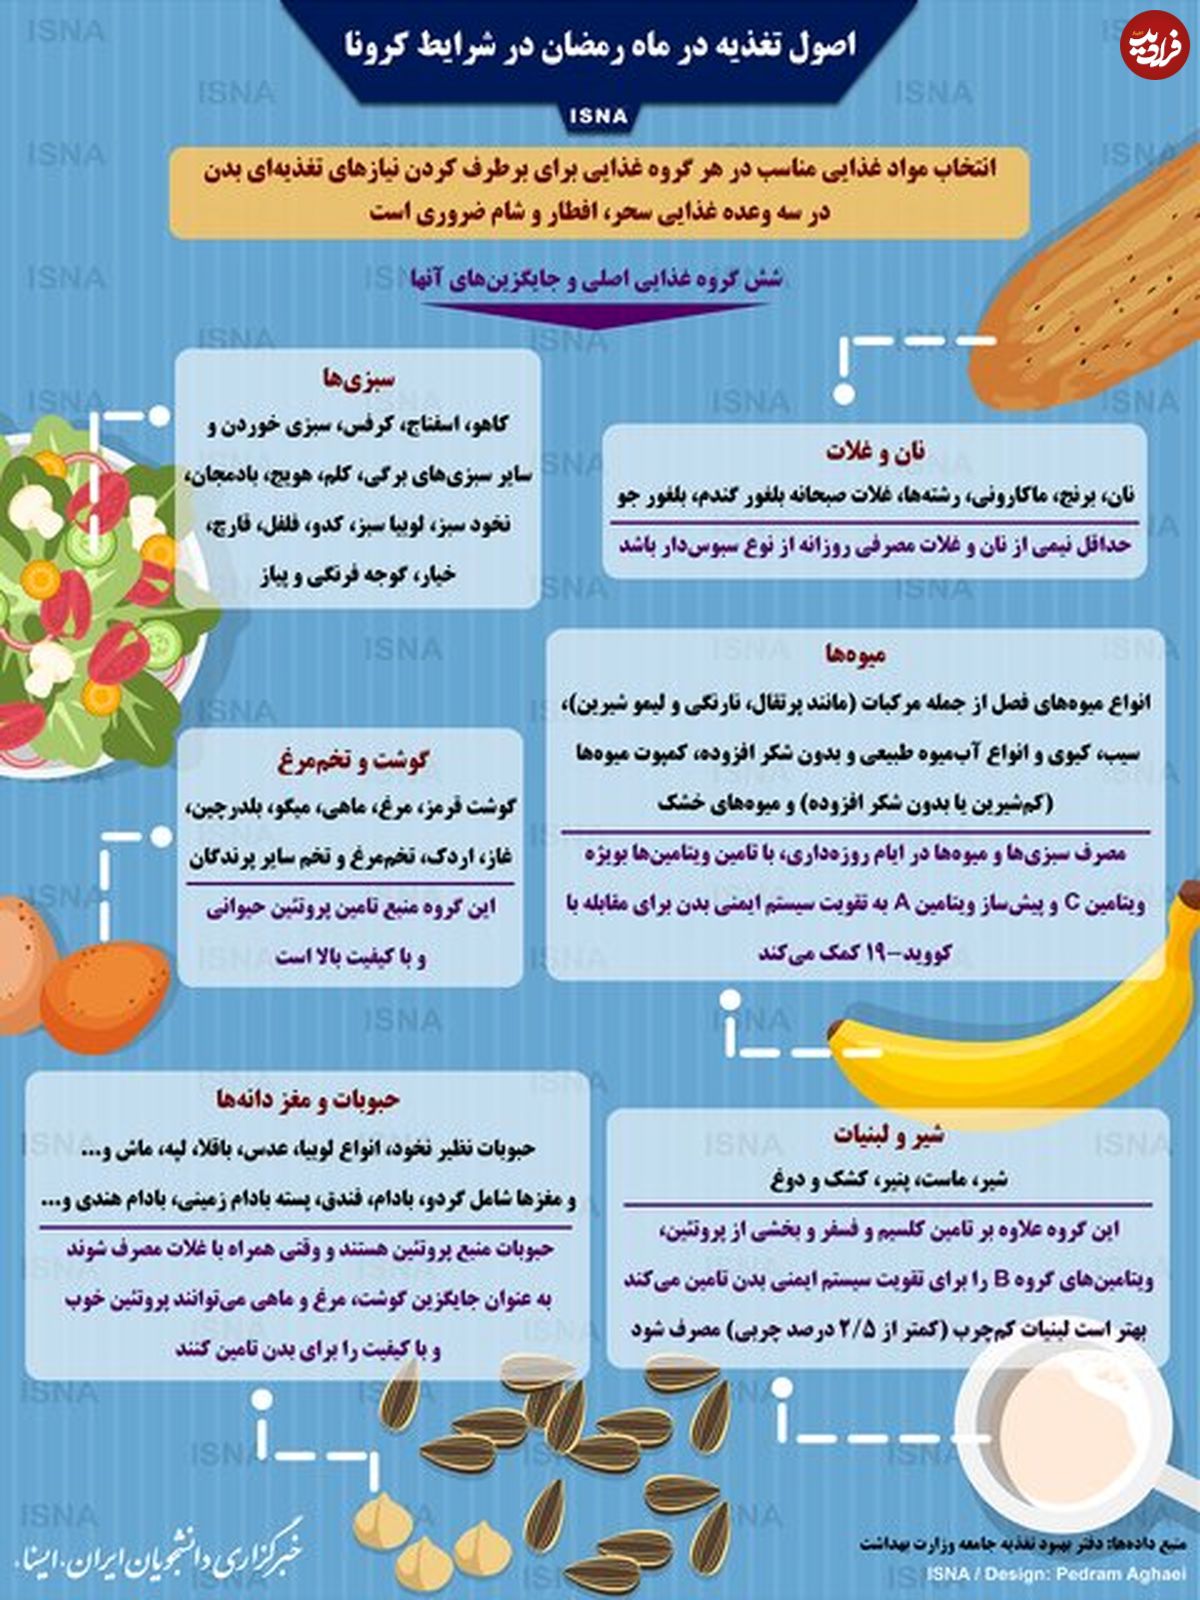 تصویر/ اصول تغذیه در ماه رمضان در شرایط کرونا